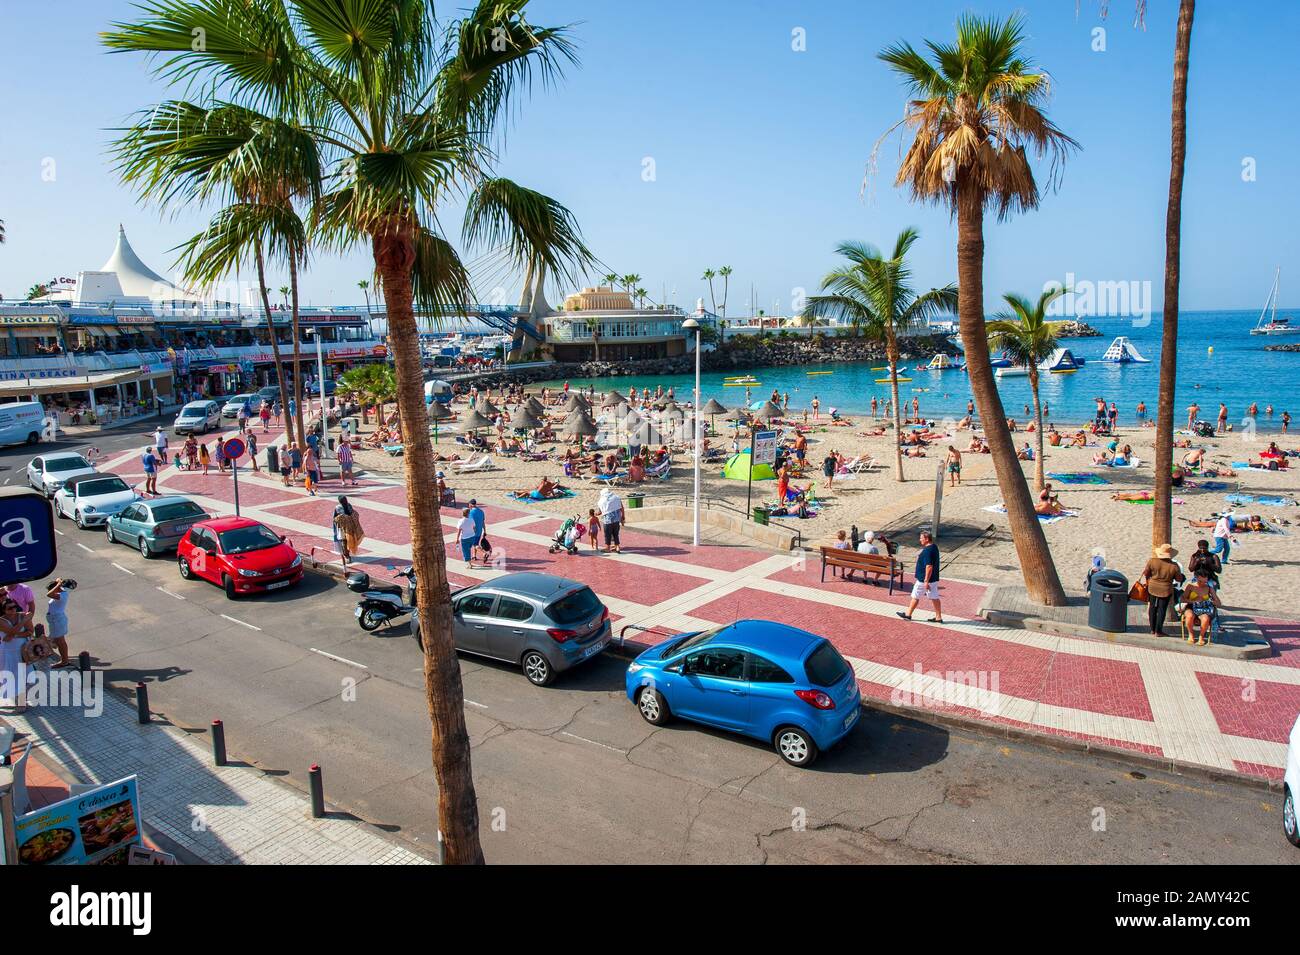 Île des Canaries TENERIFE, ESPAGNE - 26 DEC, 2019: Palmiers près de la plage appelée playa la pinta puerto deux-points. Une plage très populaire près de la ville de San Banque D'Images